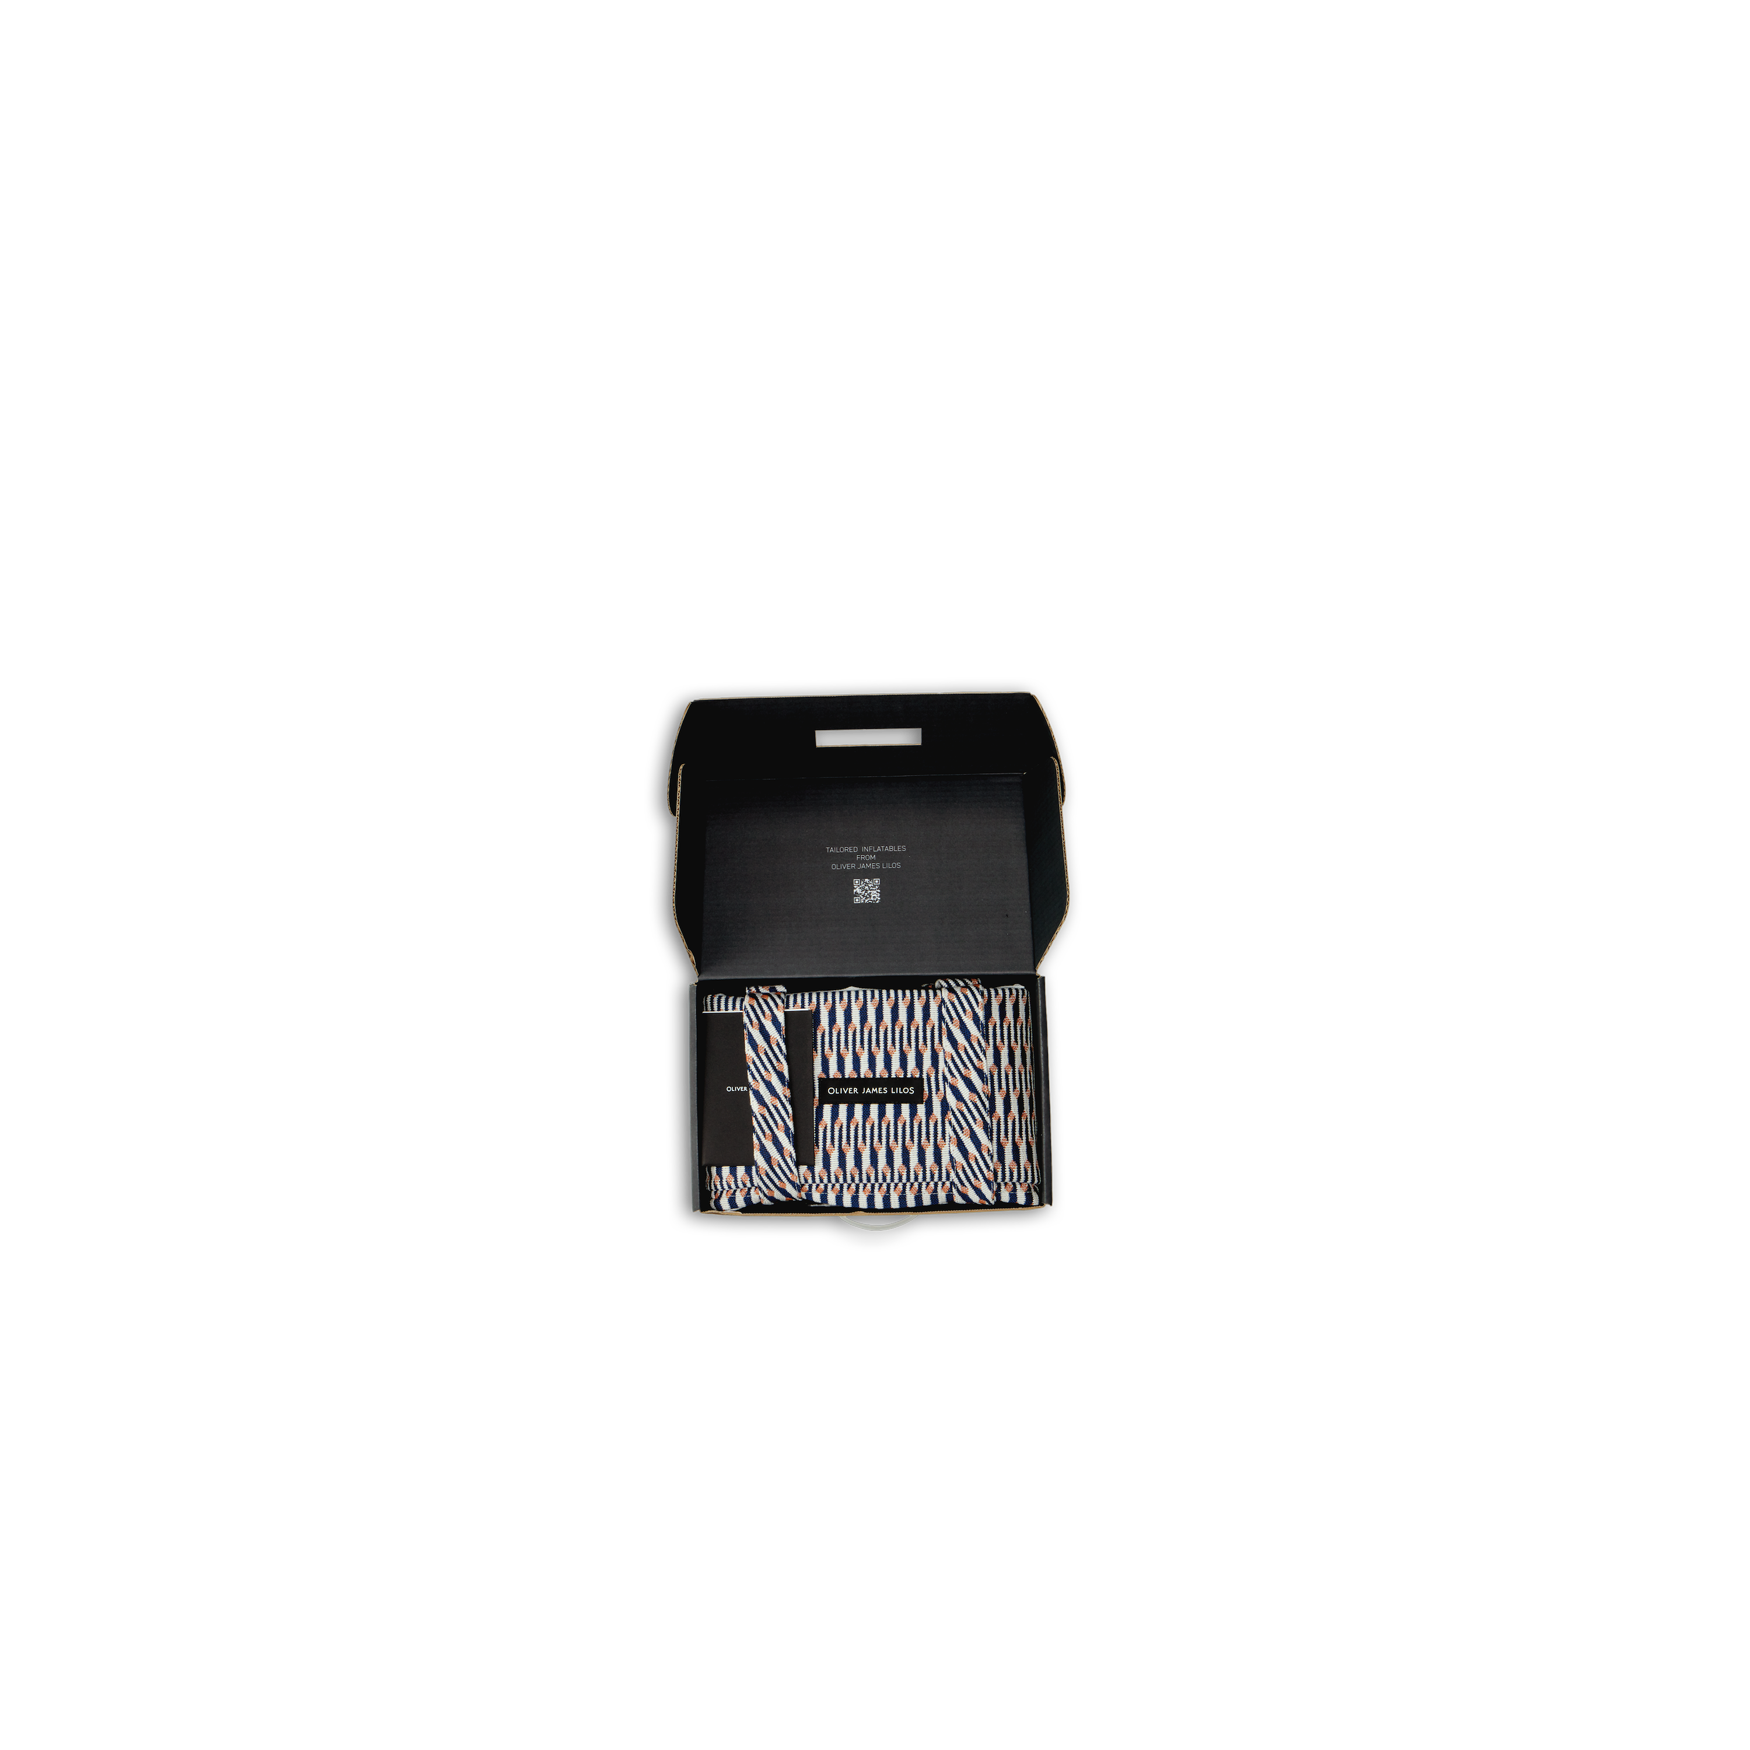 Un hamac de luxe Lilo plié dans une petite boîte noire avec le couvercle ouvert.